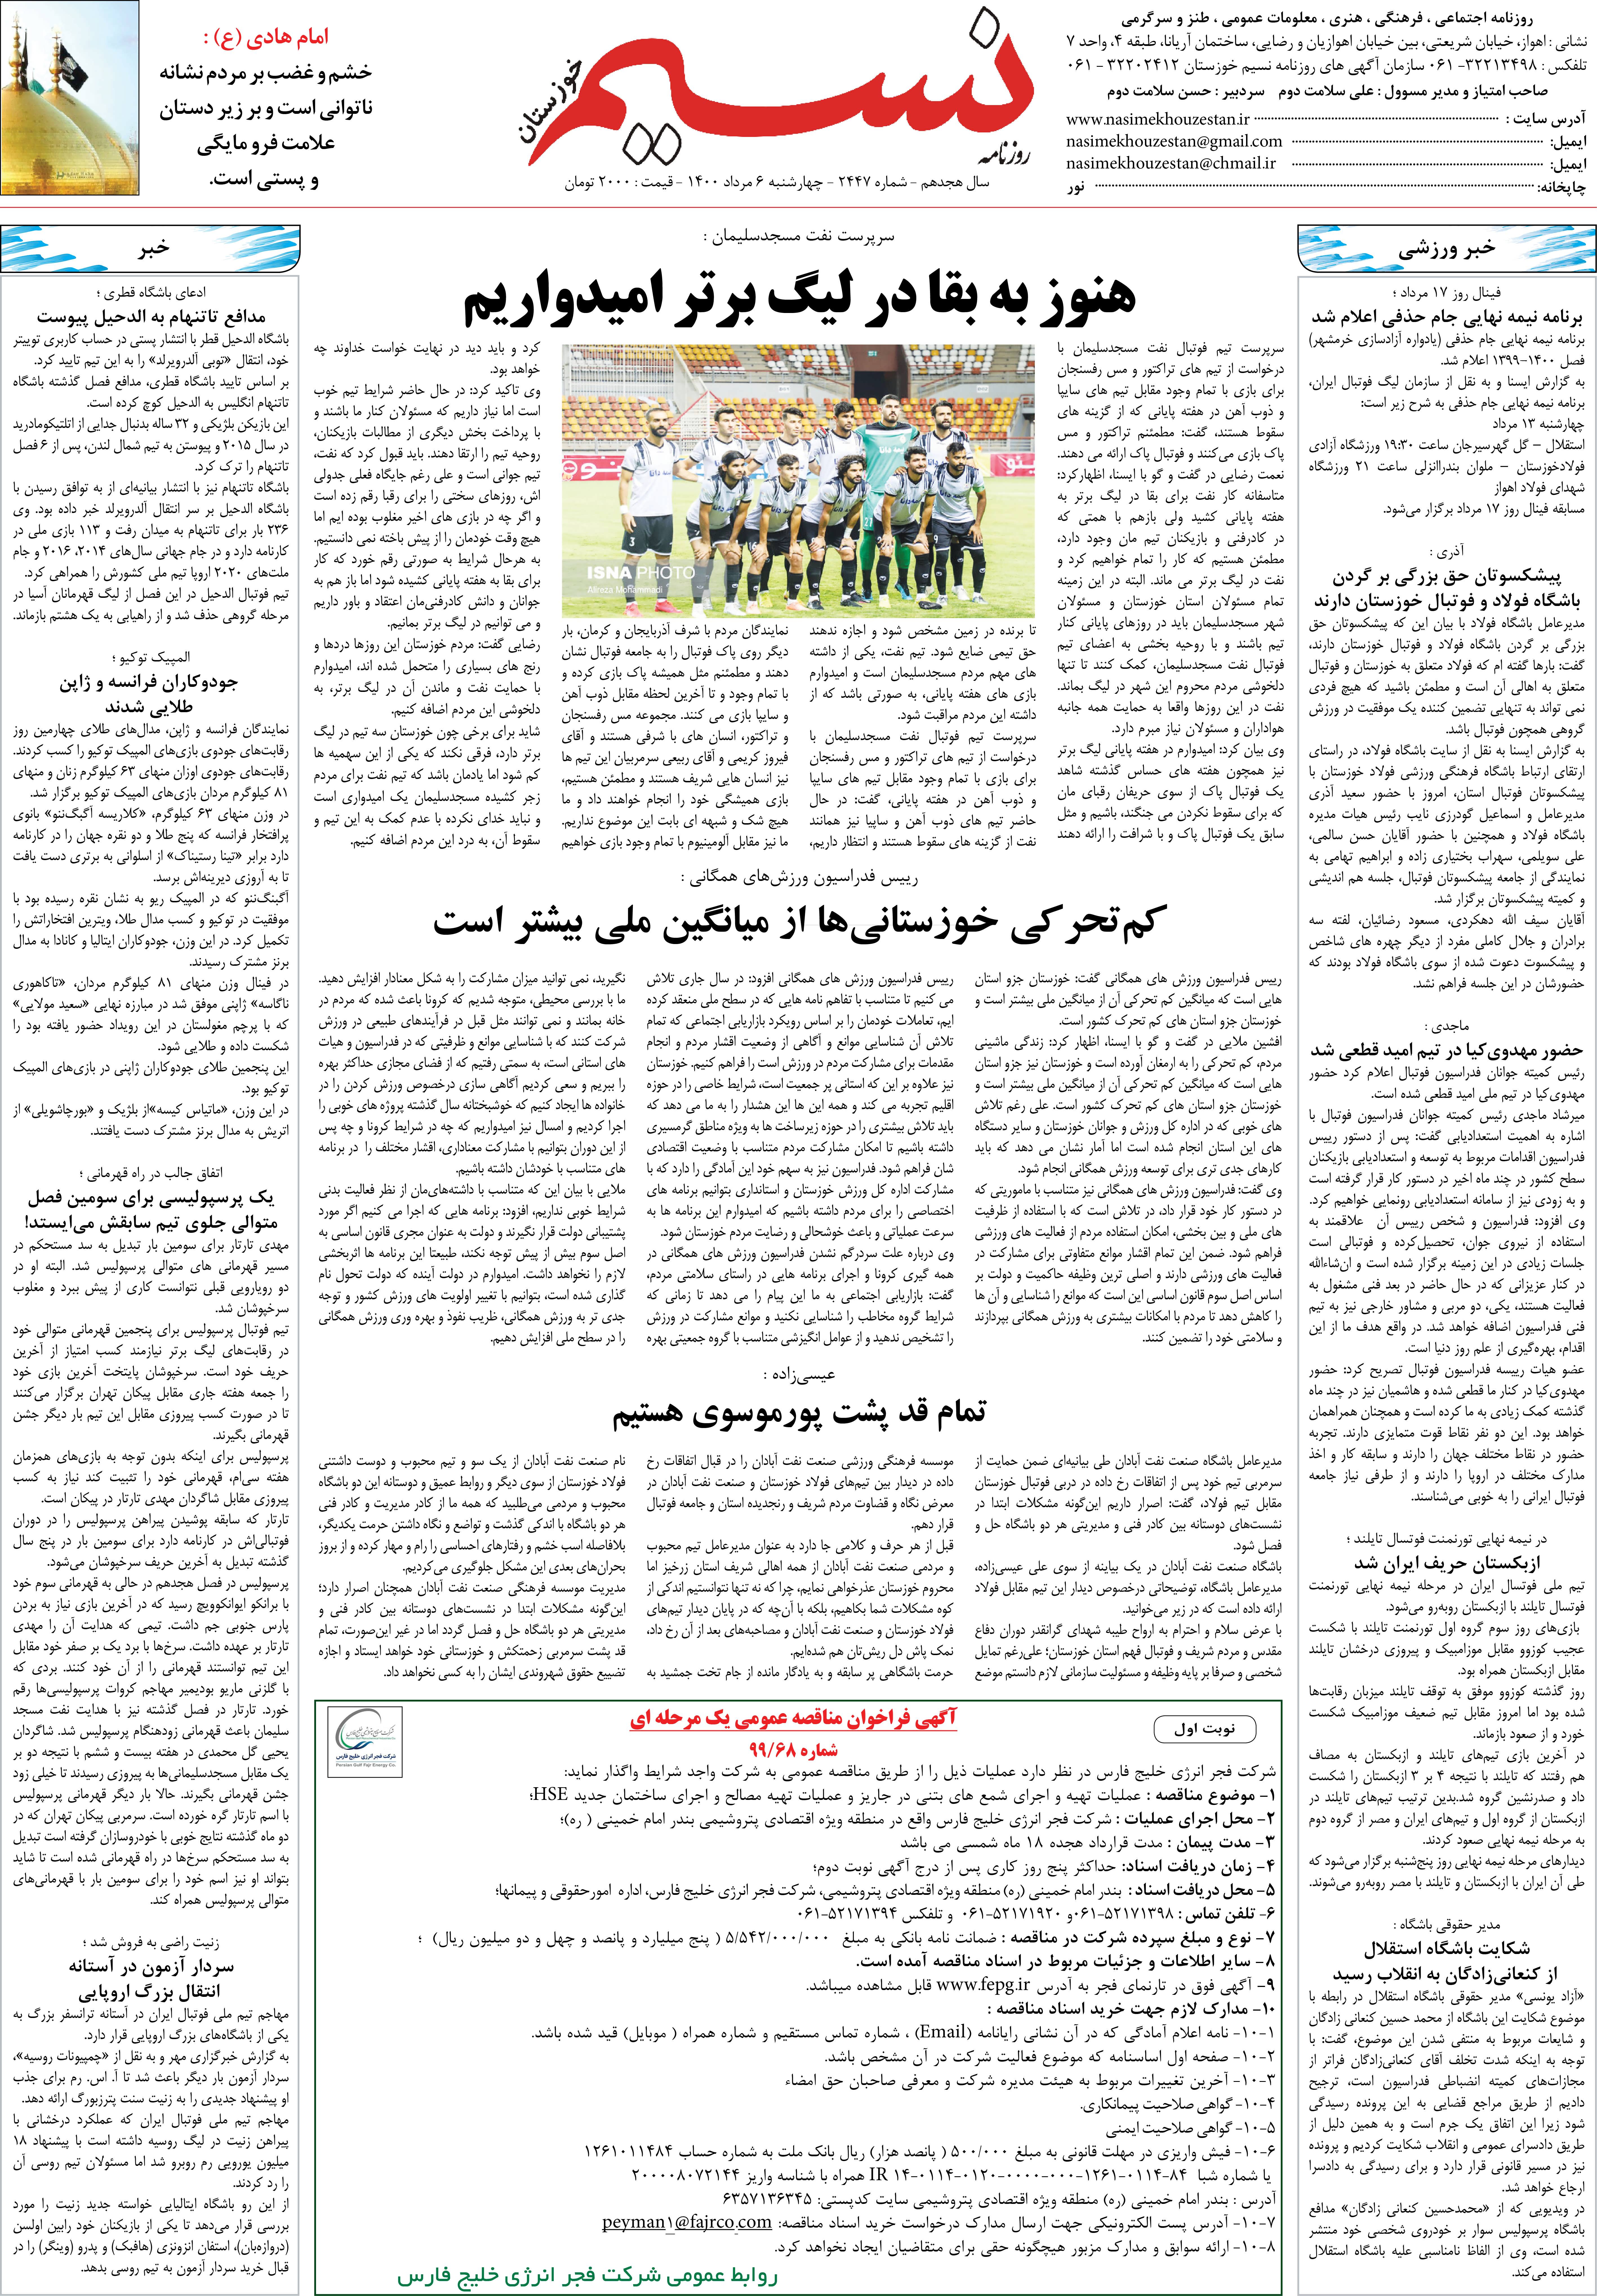 صفحه آخر روزنامه نسیم شماره 2447